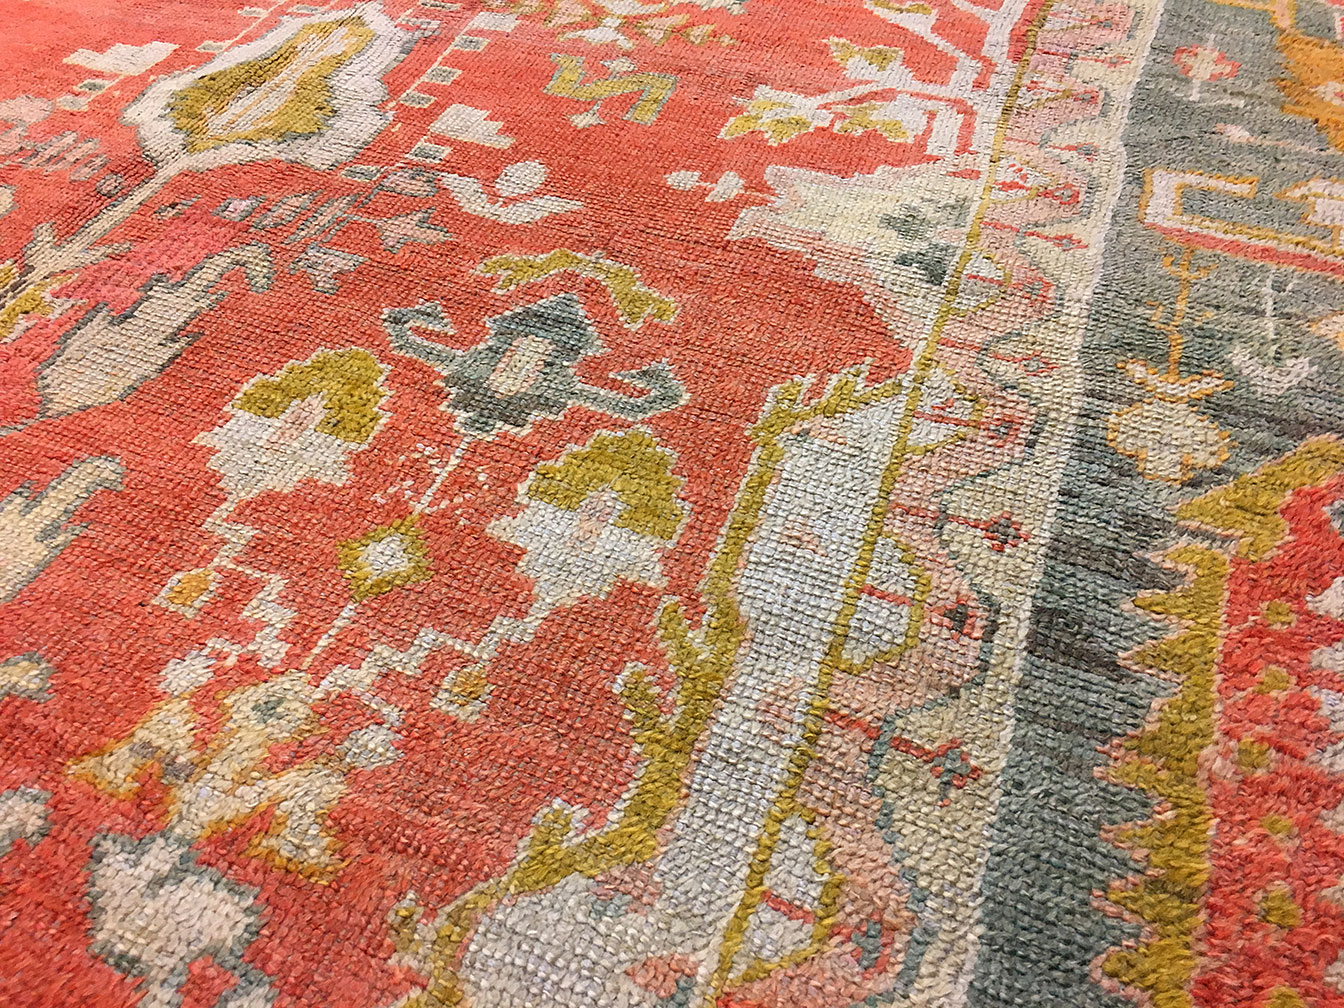 Antique oushak Carpet - # 53493